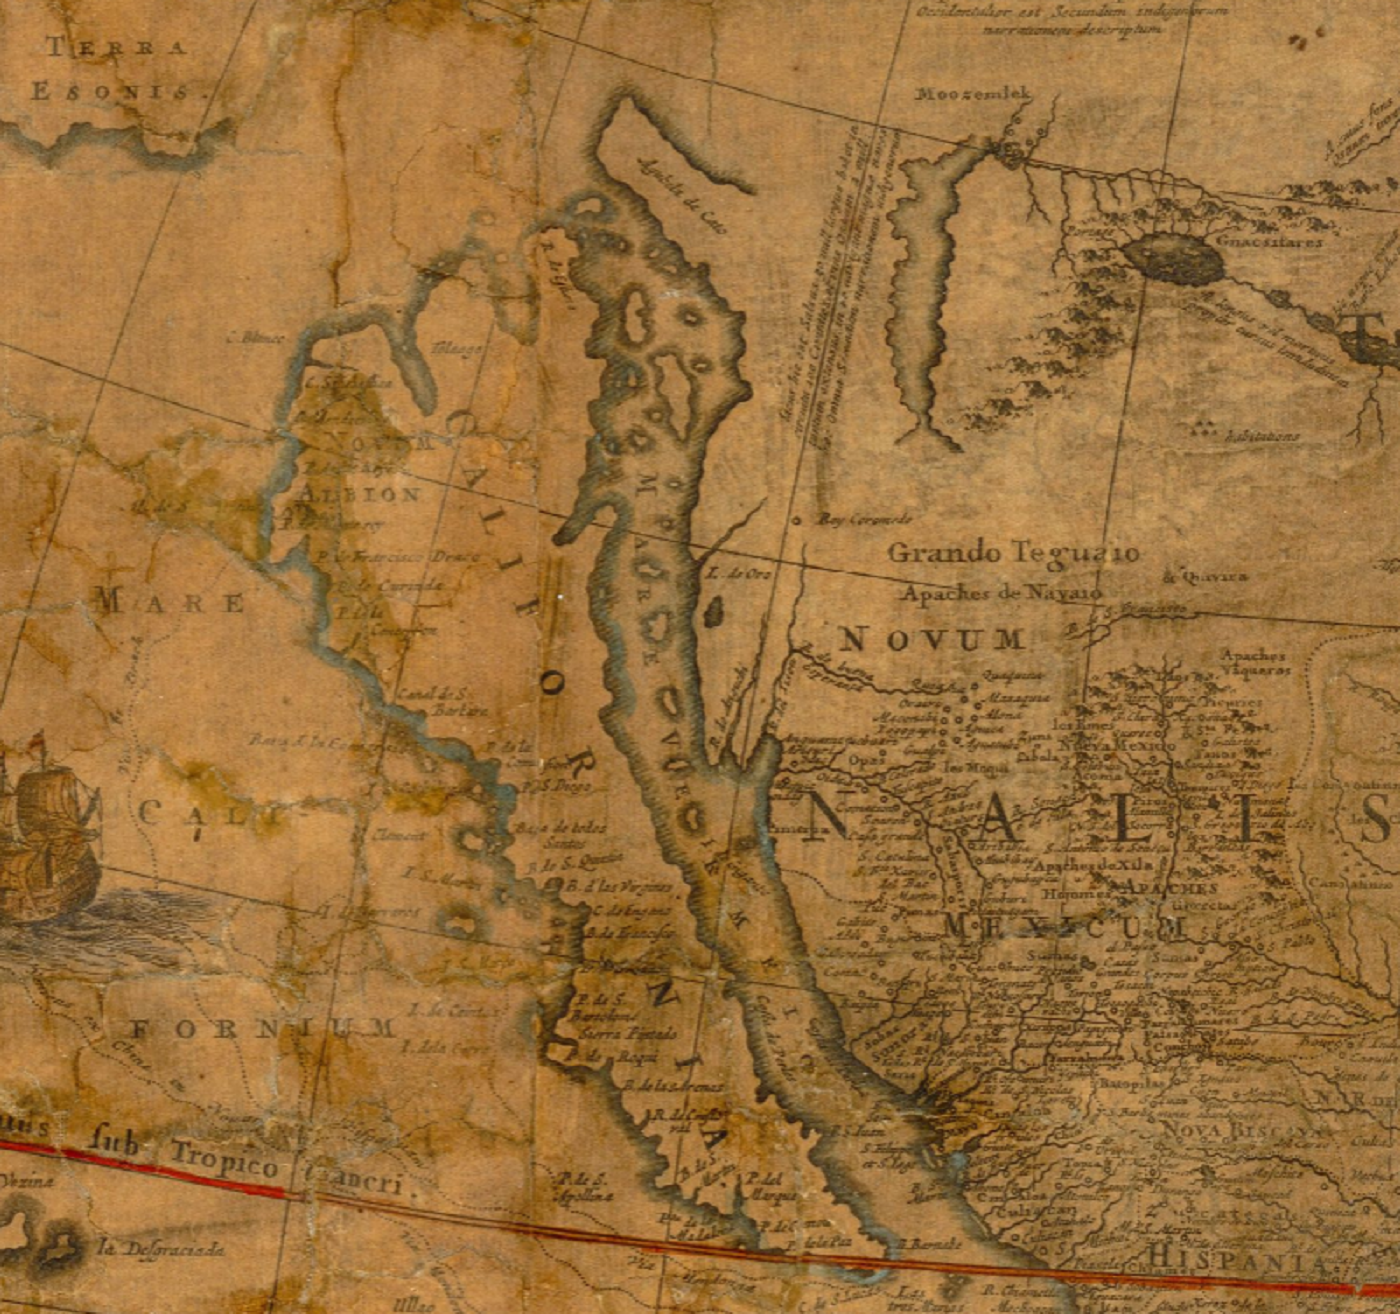 Serra funda San Diego, punto de partida de la colonización de California